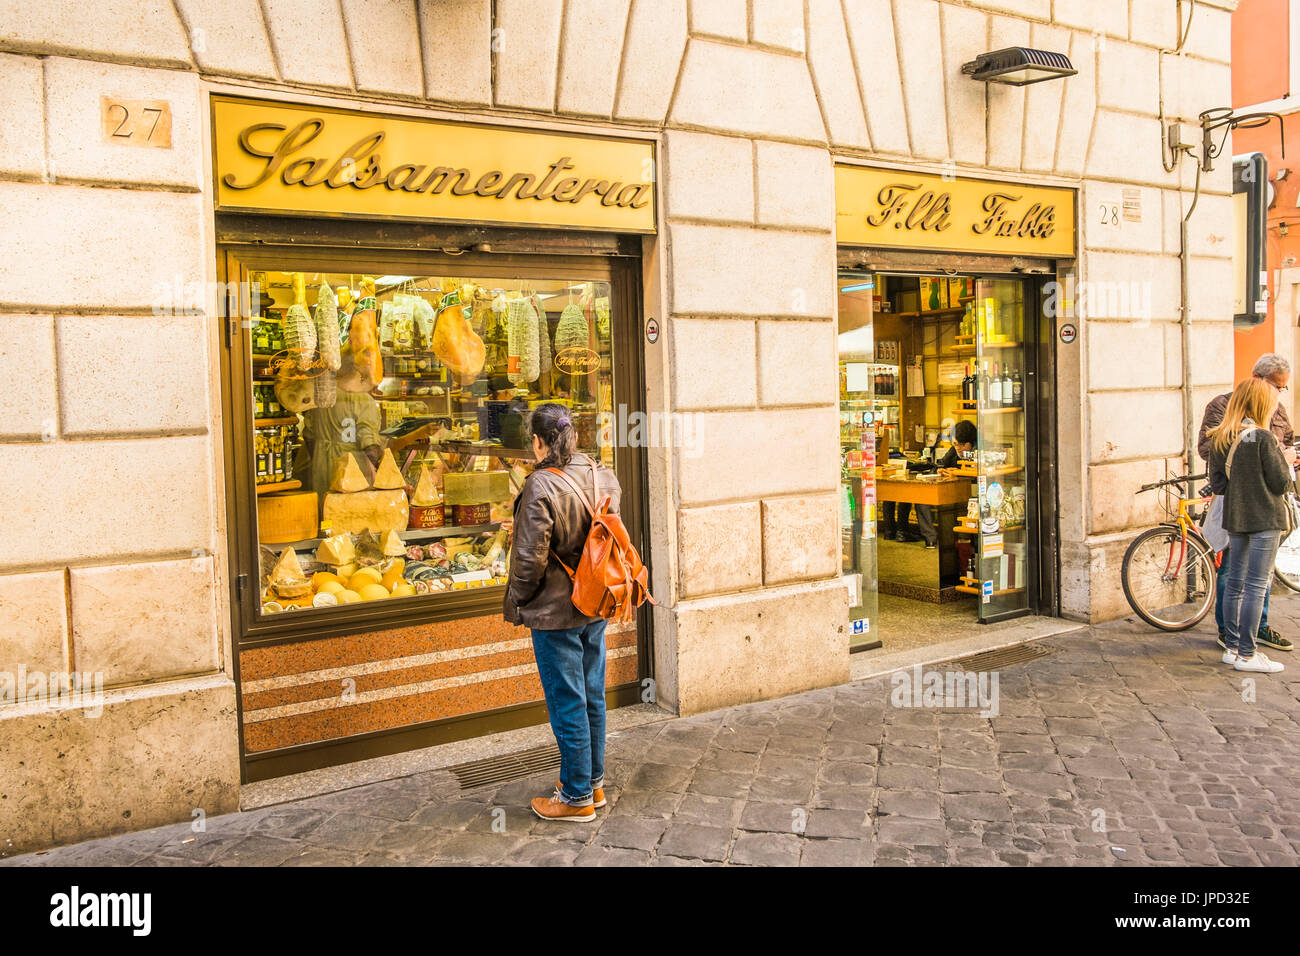 salsamenteria,f.lli fabbi, delicatessen store in rome historic district Stock Photo